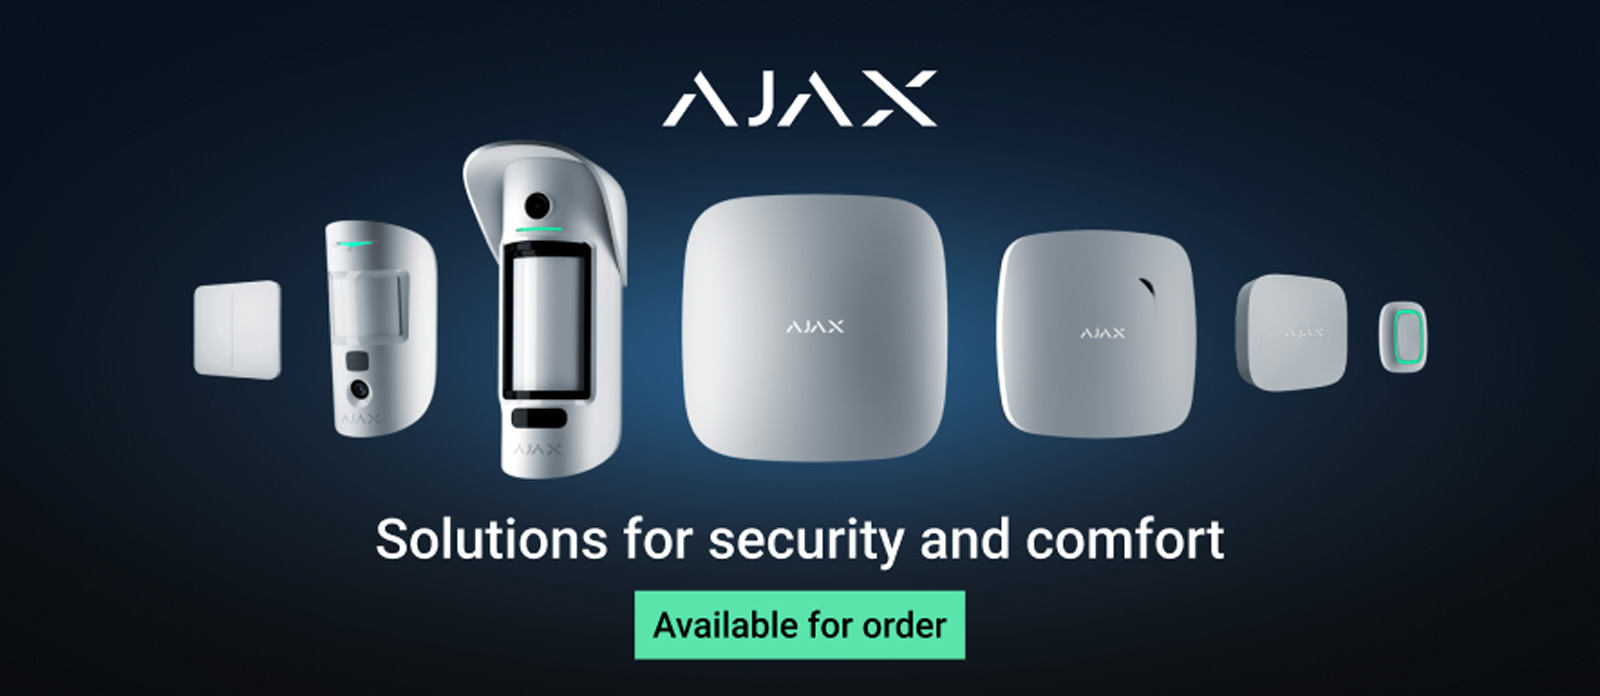 AJAX HUB Alarmsystem